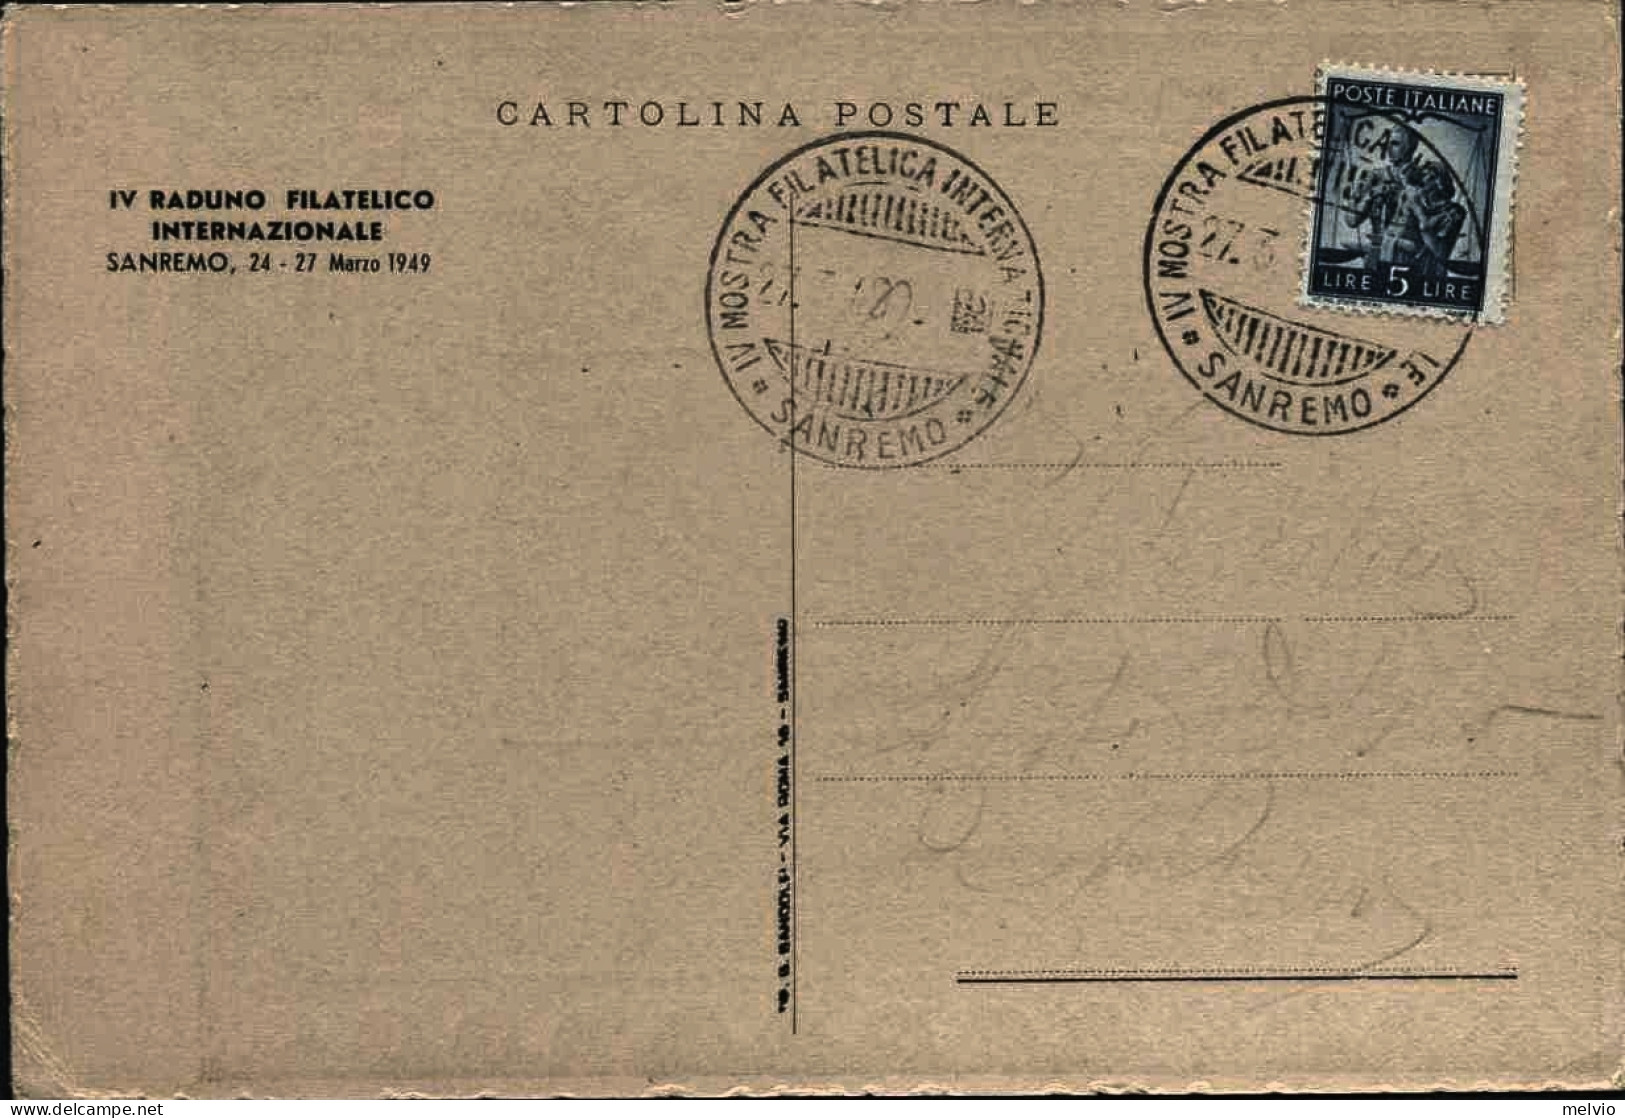 1949-cartolina Raduno Filatelico Internazionale Sanremo Affrancata L.5 Democrati - San Remo